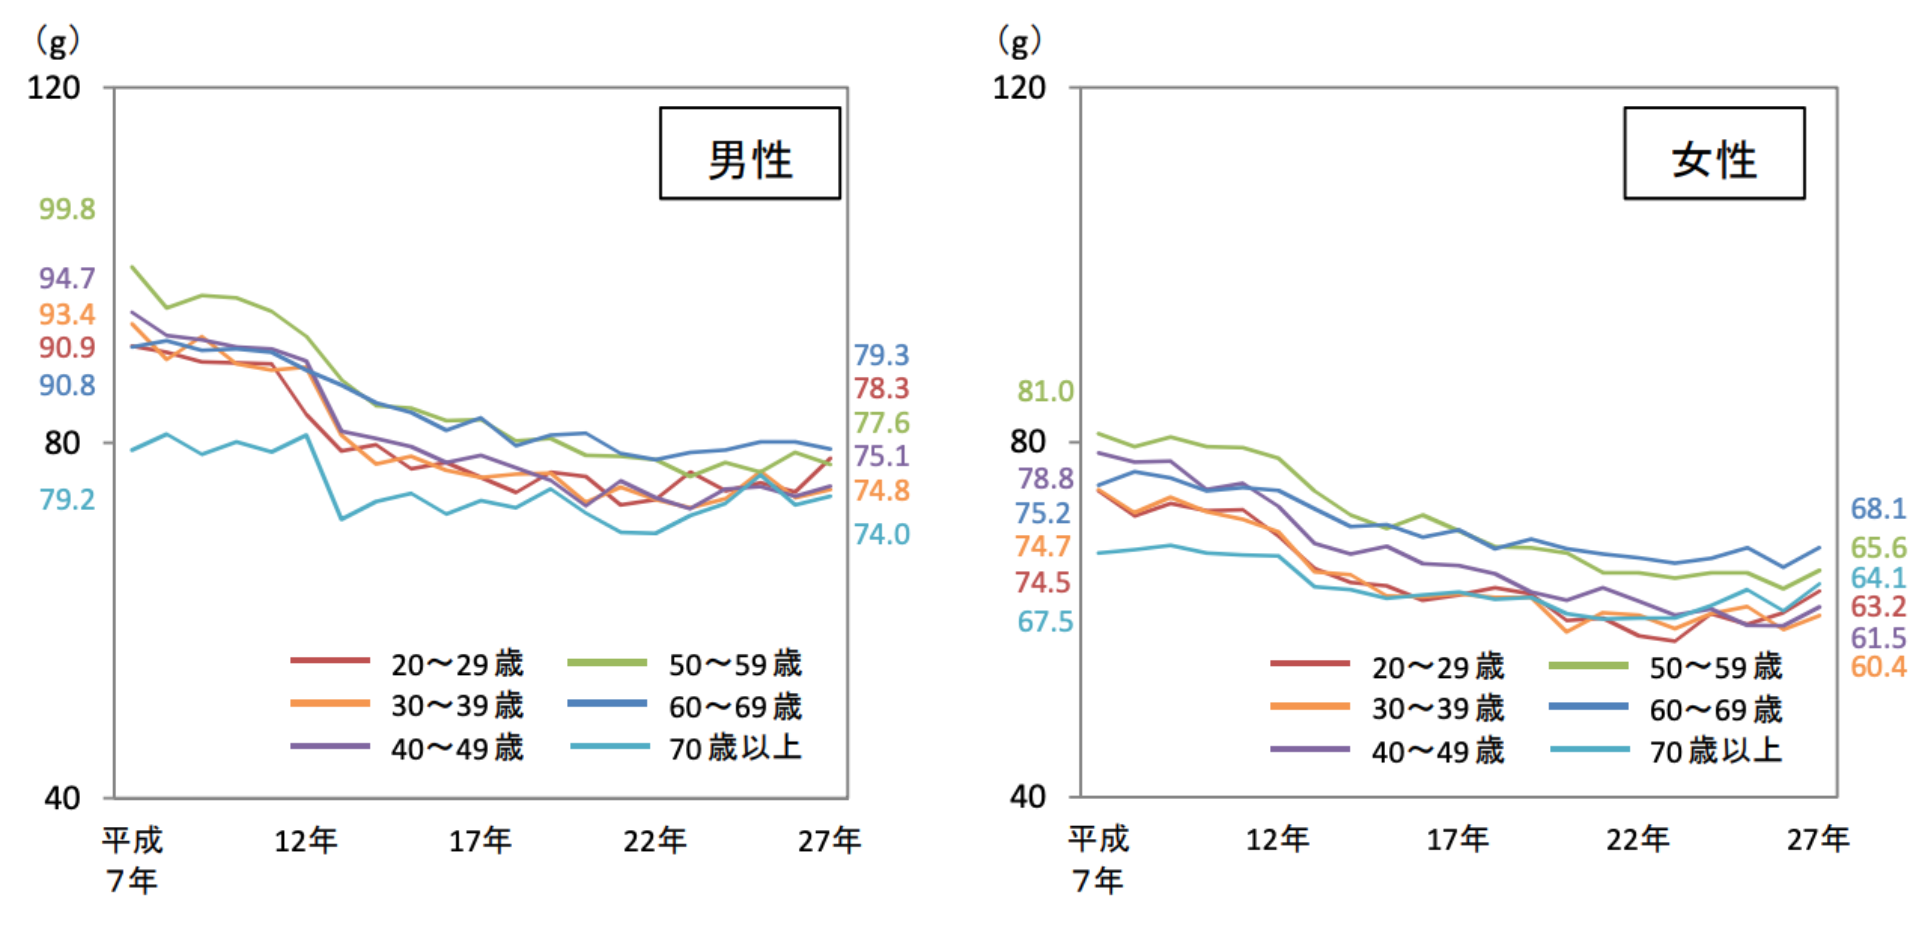 日本人のタンパク質摂取量の平均値の年次推移